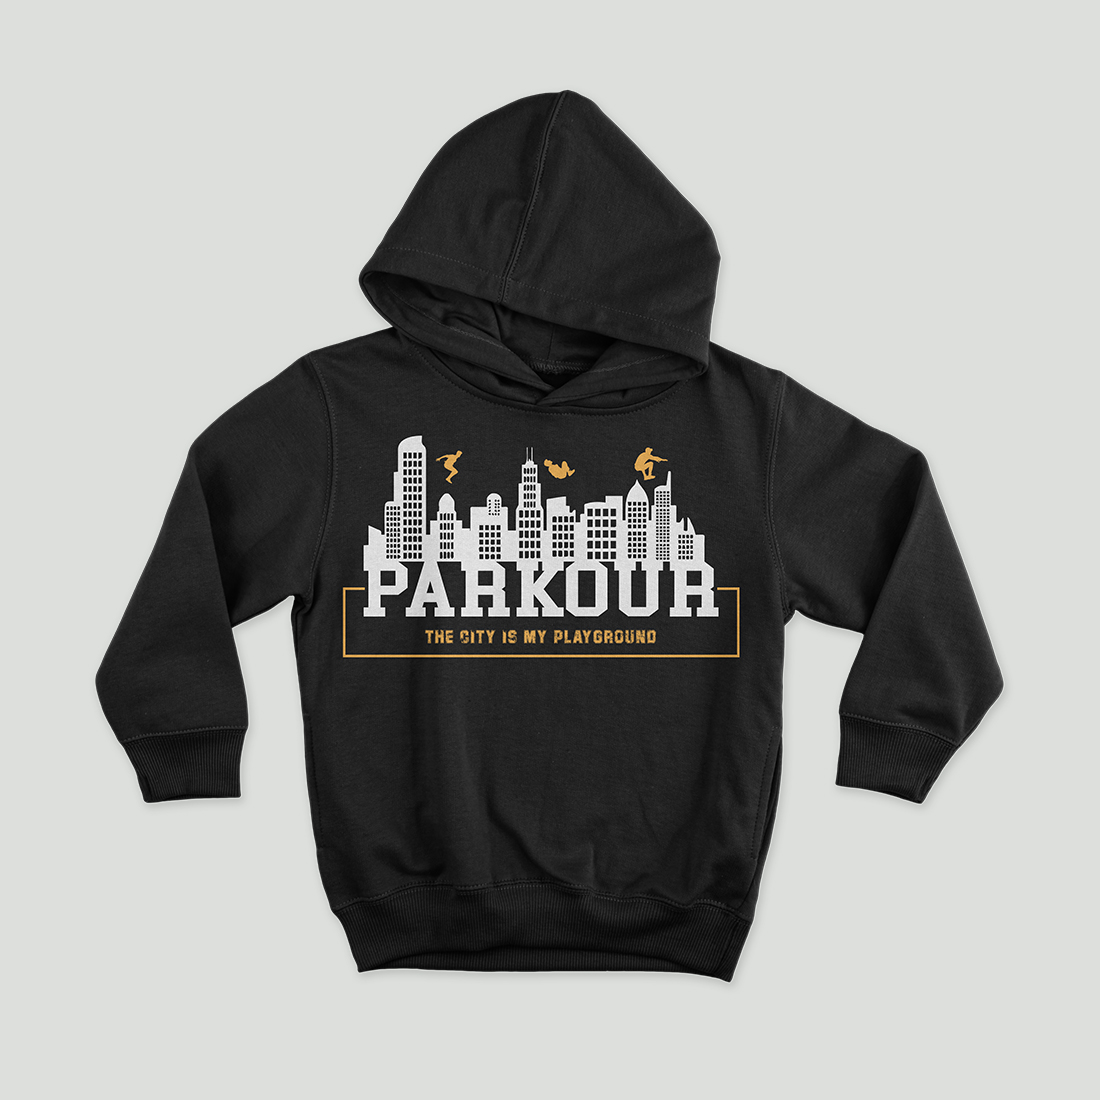 parkour T shirt Design4, parkour, parkour Design, T shirt , preview image.